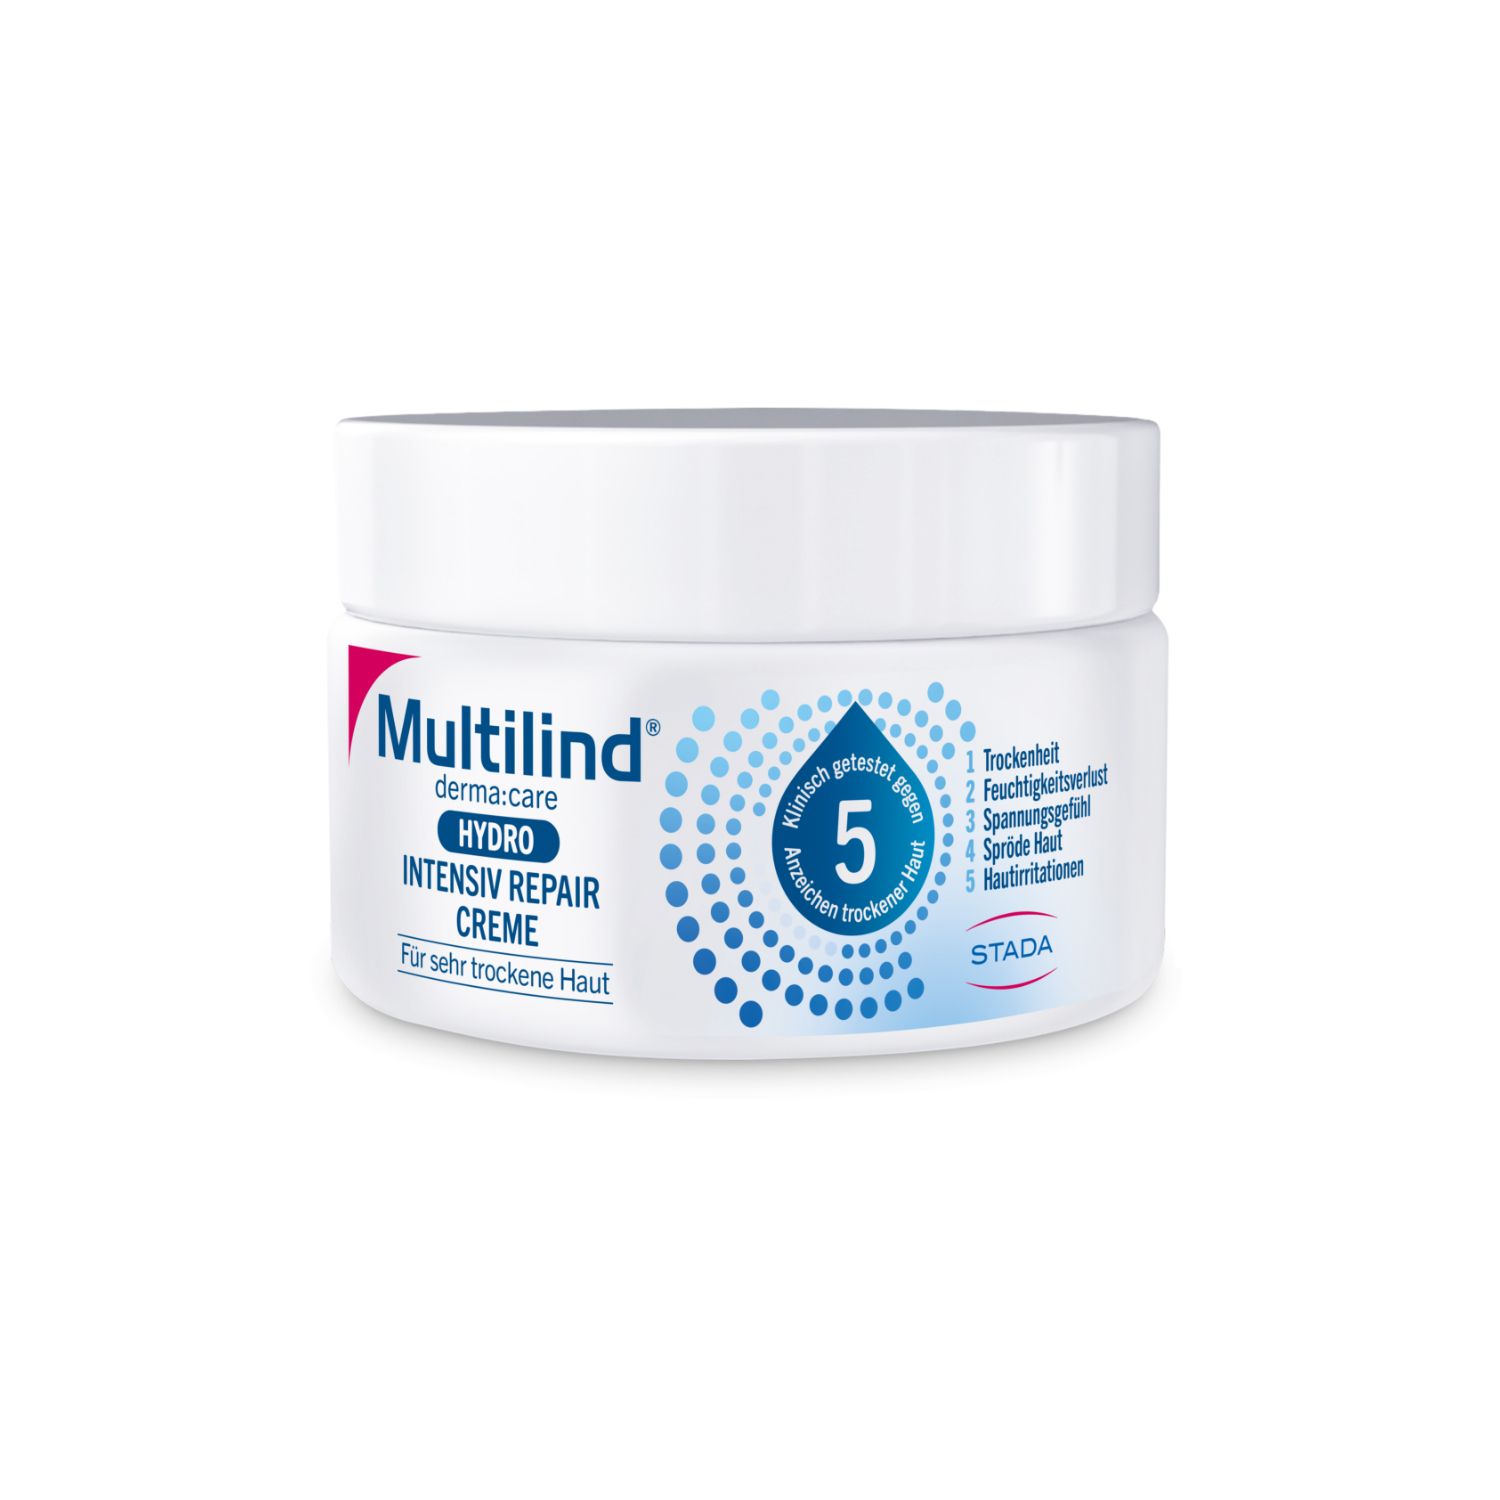 Multilind® derma:care Hydro Intensiv Repair Creme: Intensive Pflege für sehr trockene Haut: Aufbauend, langanhaltend. Mit Ceramide NP, Panthenol, Glyzerin, Rizinusöl, Beerenwachs